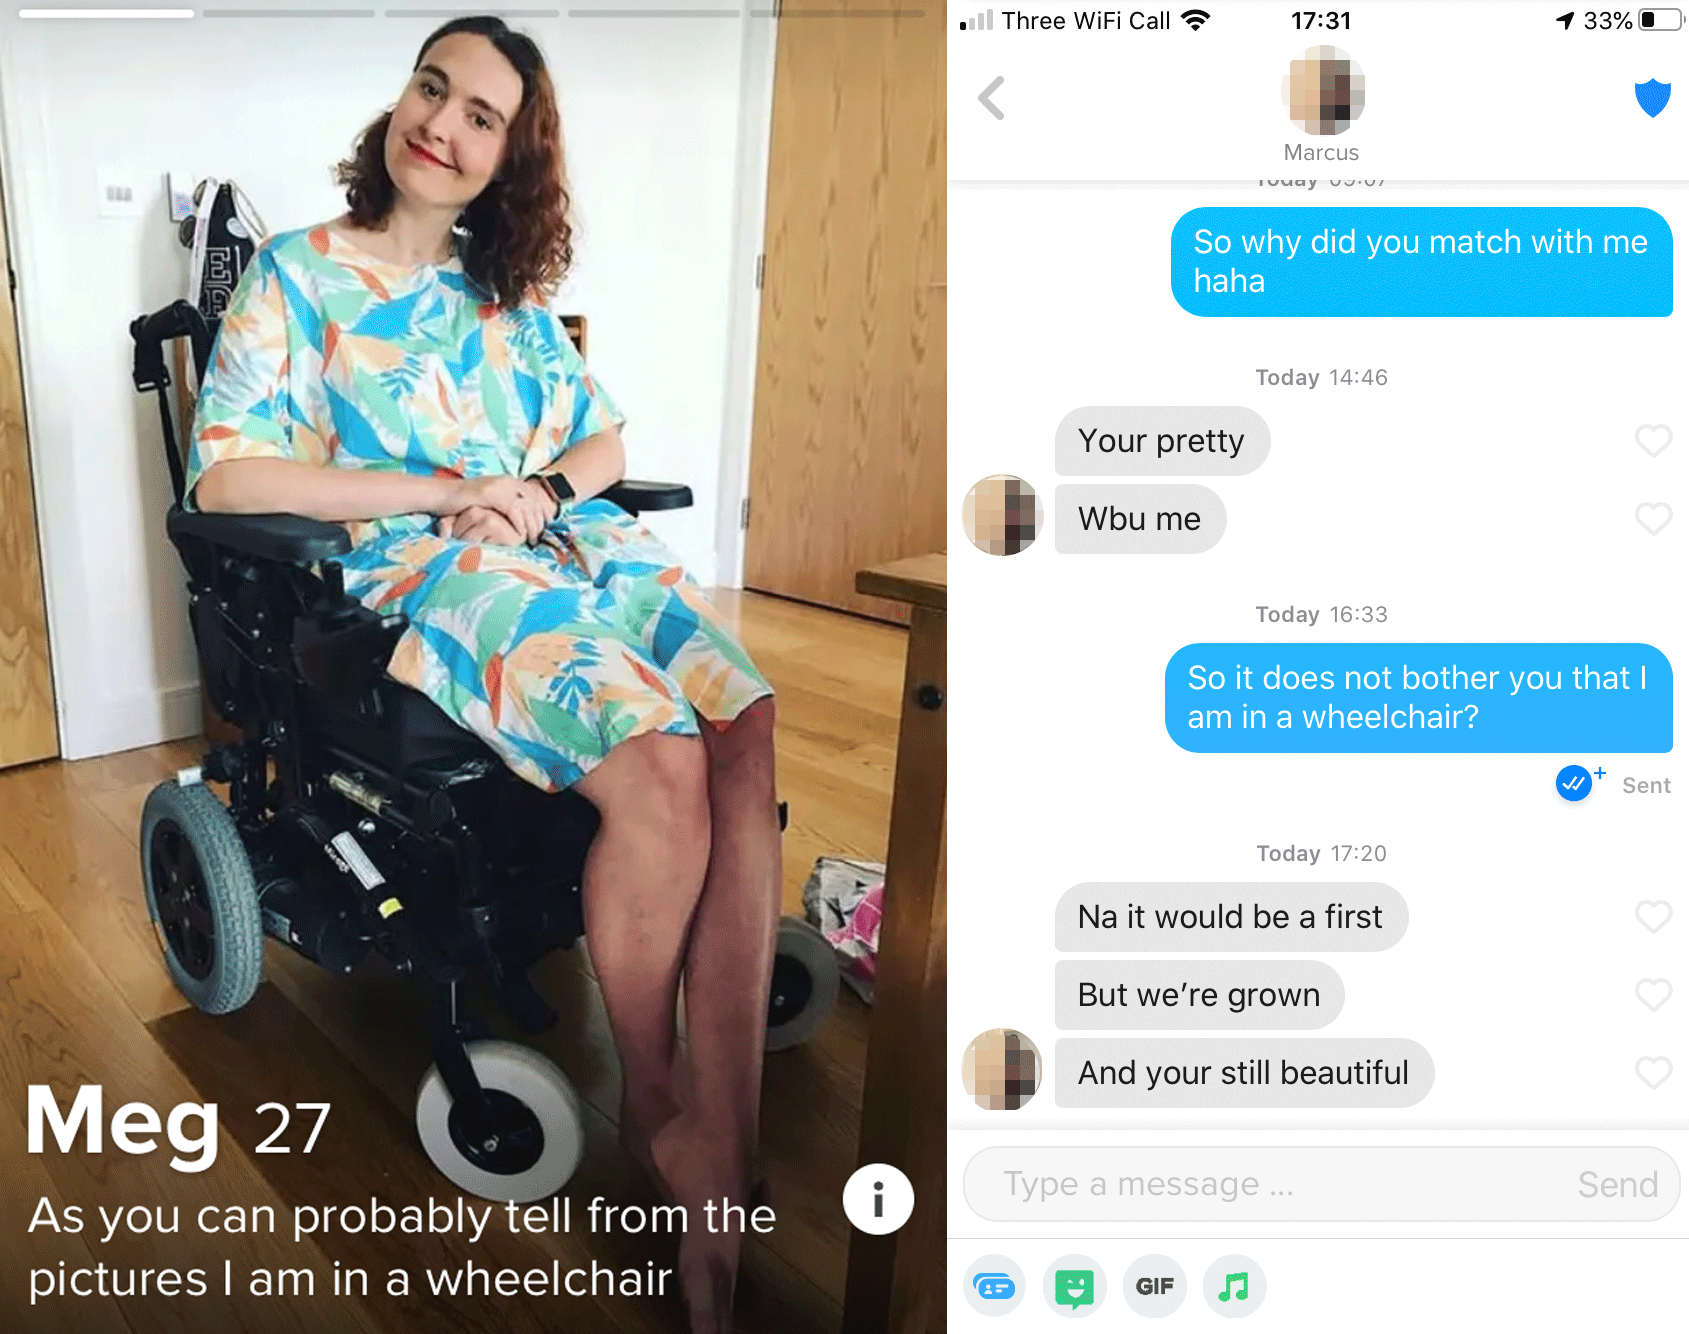 paraplegic online dating)